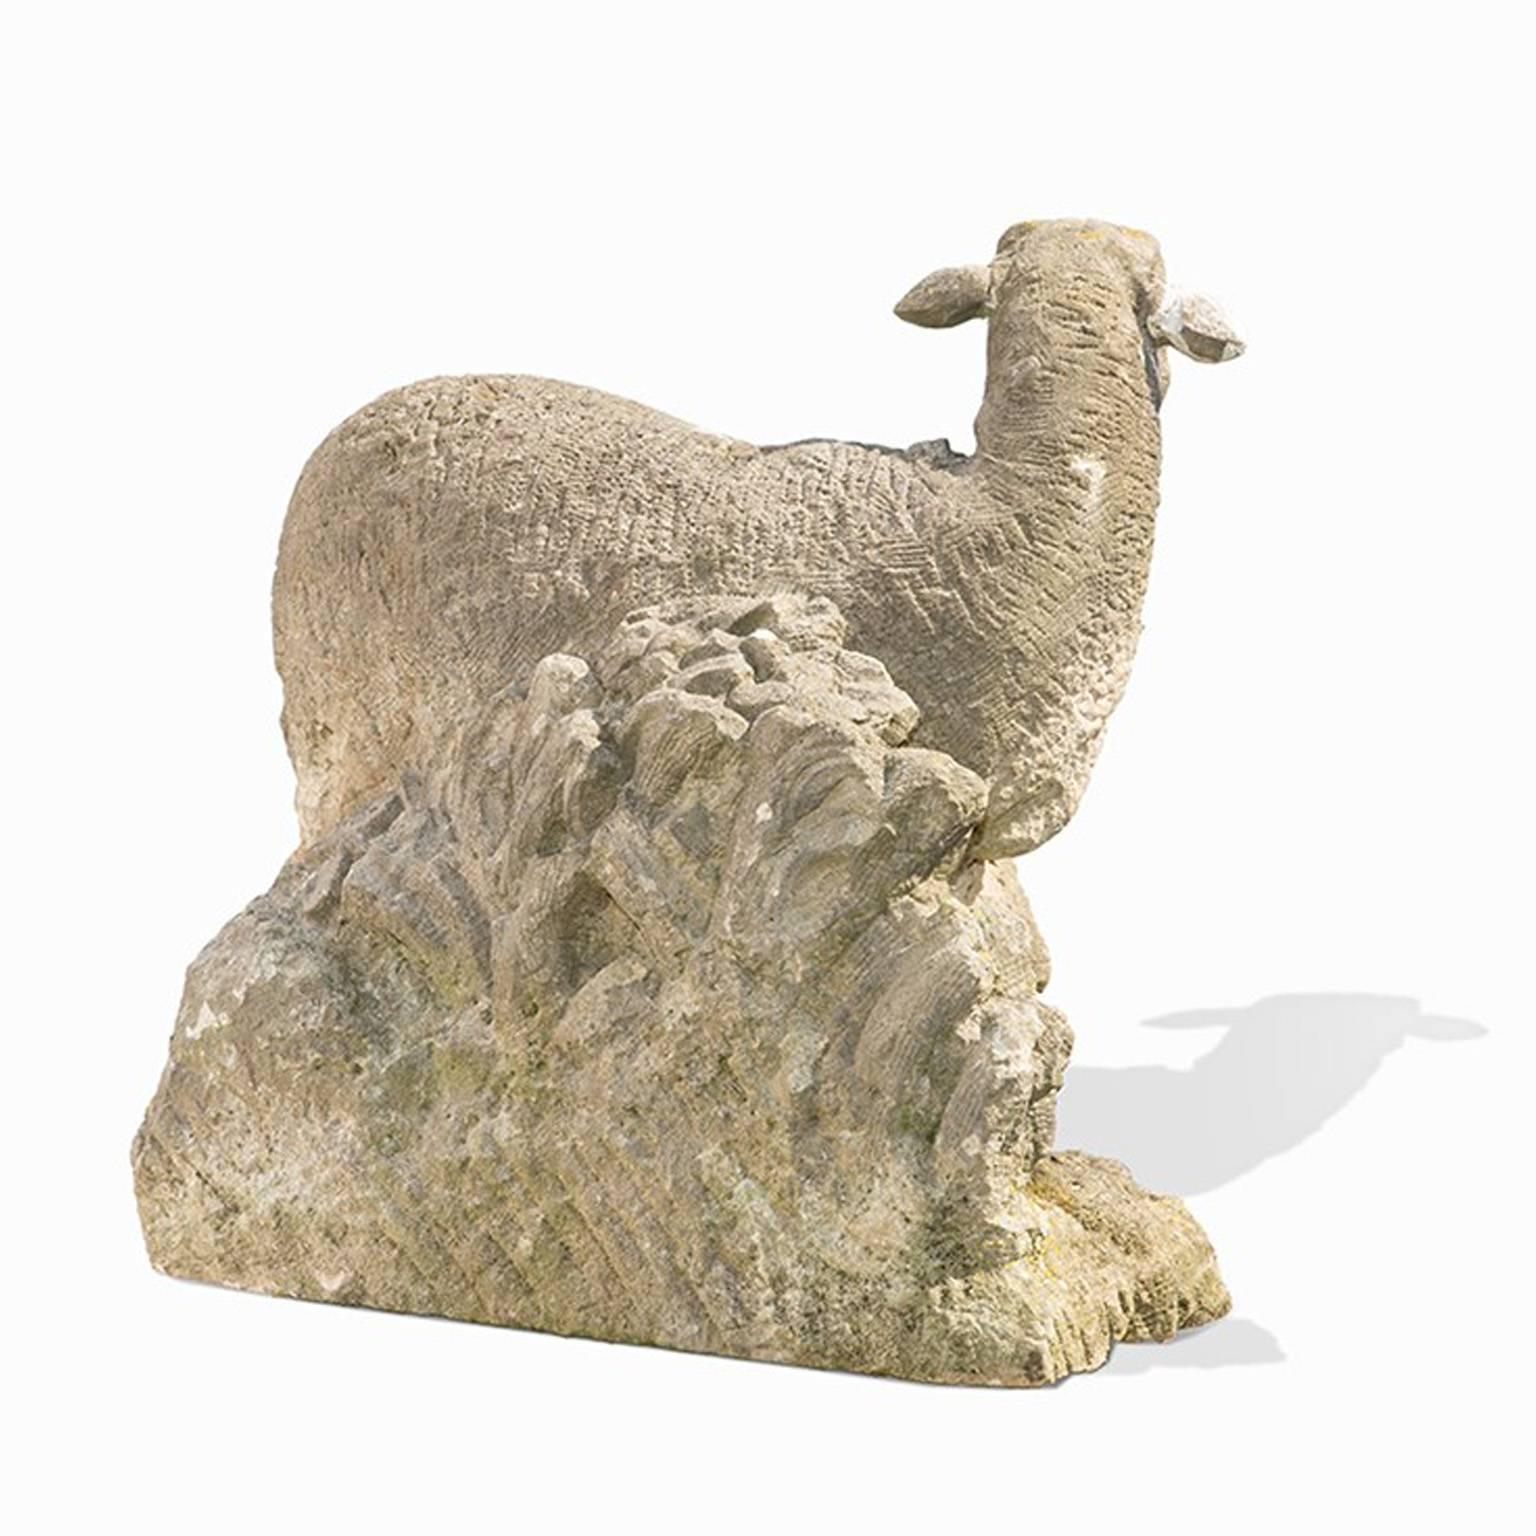 Dieses mythologische bayerische Schafsmotiv ist für den Garten bestimmt. Die antike deutsche Skulptur ist aus handgeschnitztem Sandstein gefertigt, in altersgemäß gutem Zustand. Das linke Ohr und Teile der Basis wurden hinzugefügt. Die Oberfläche